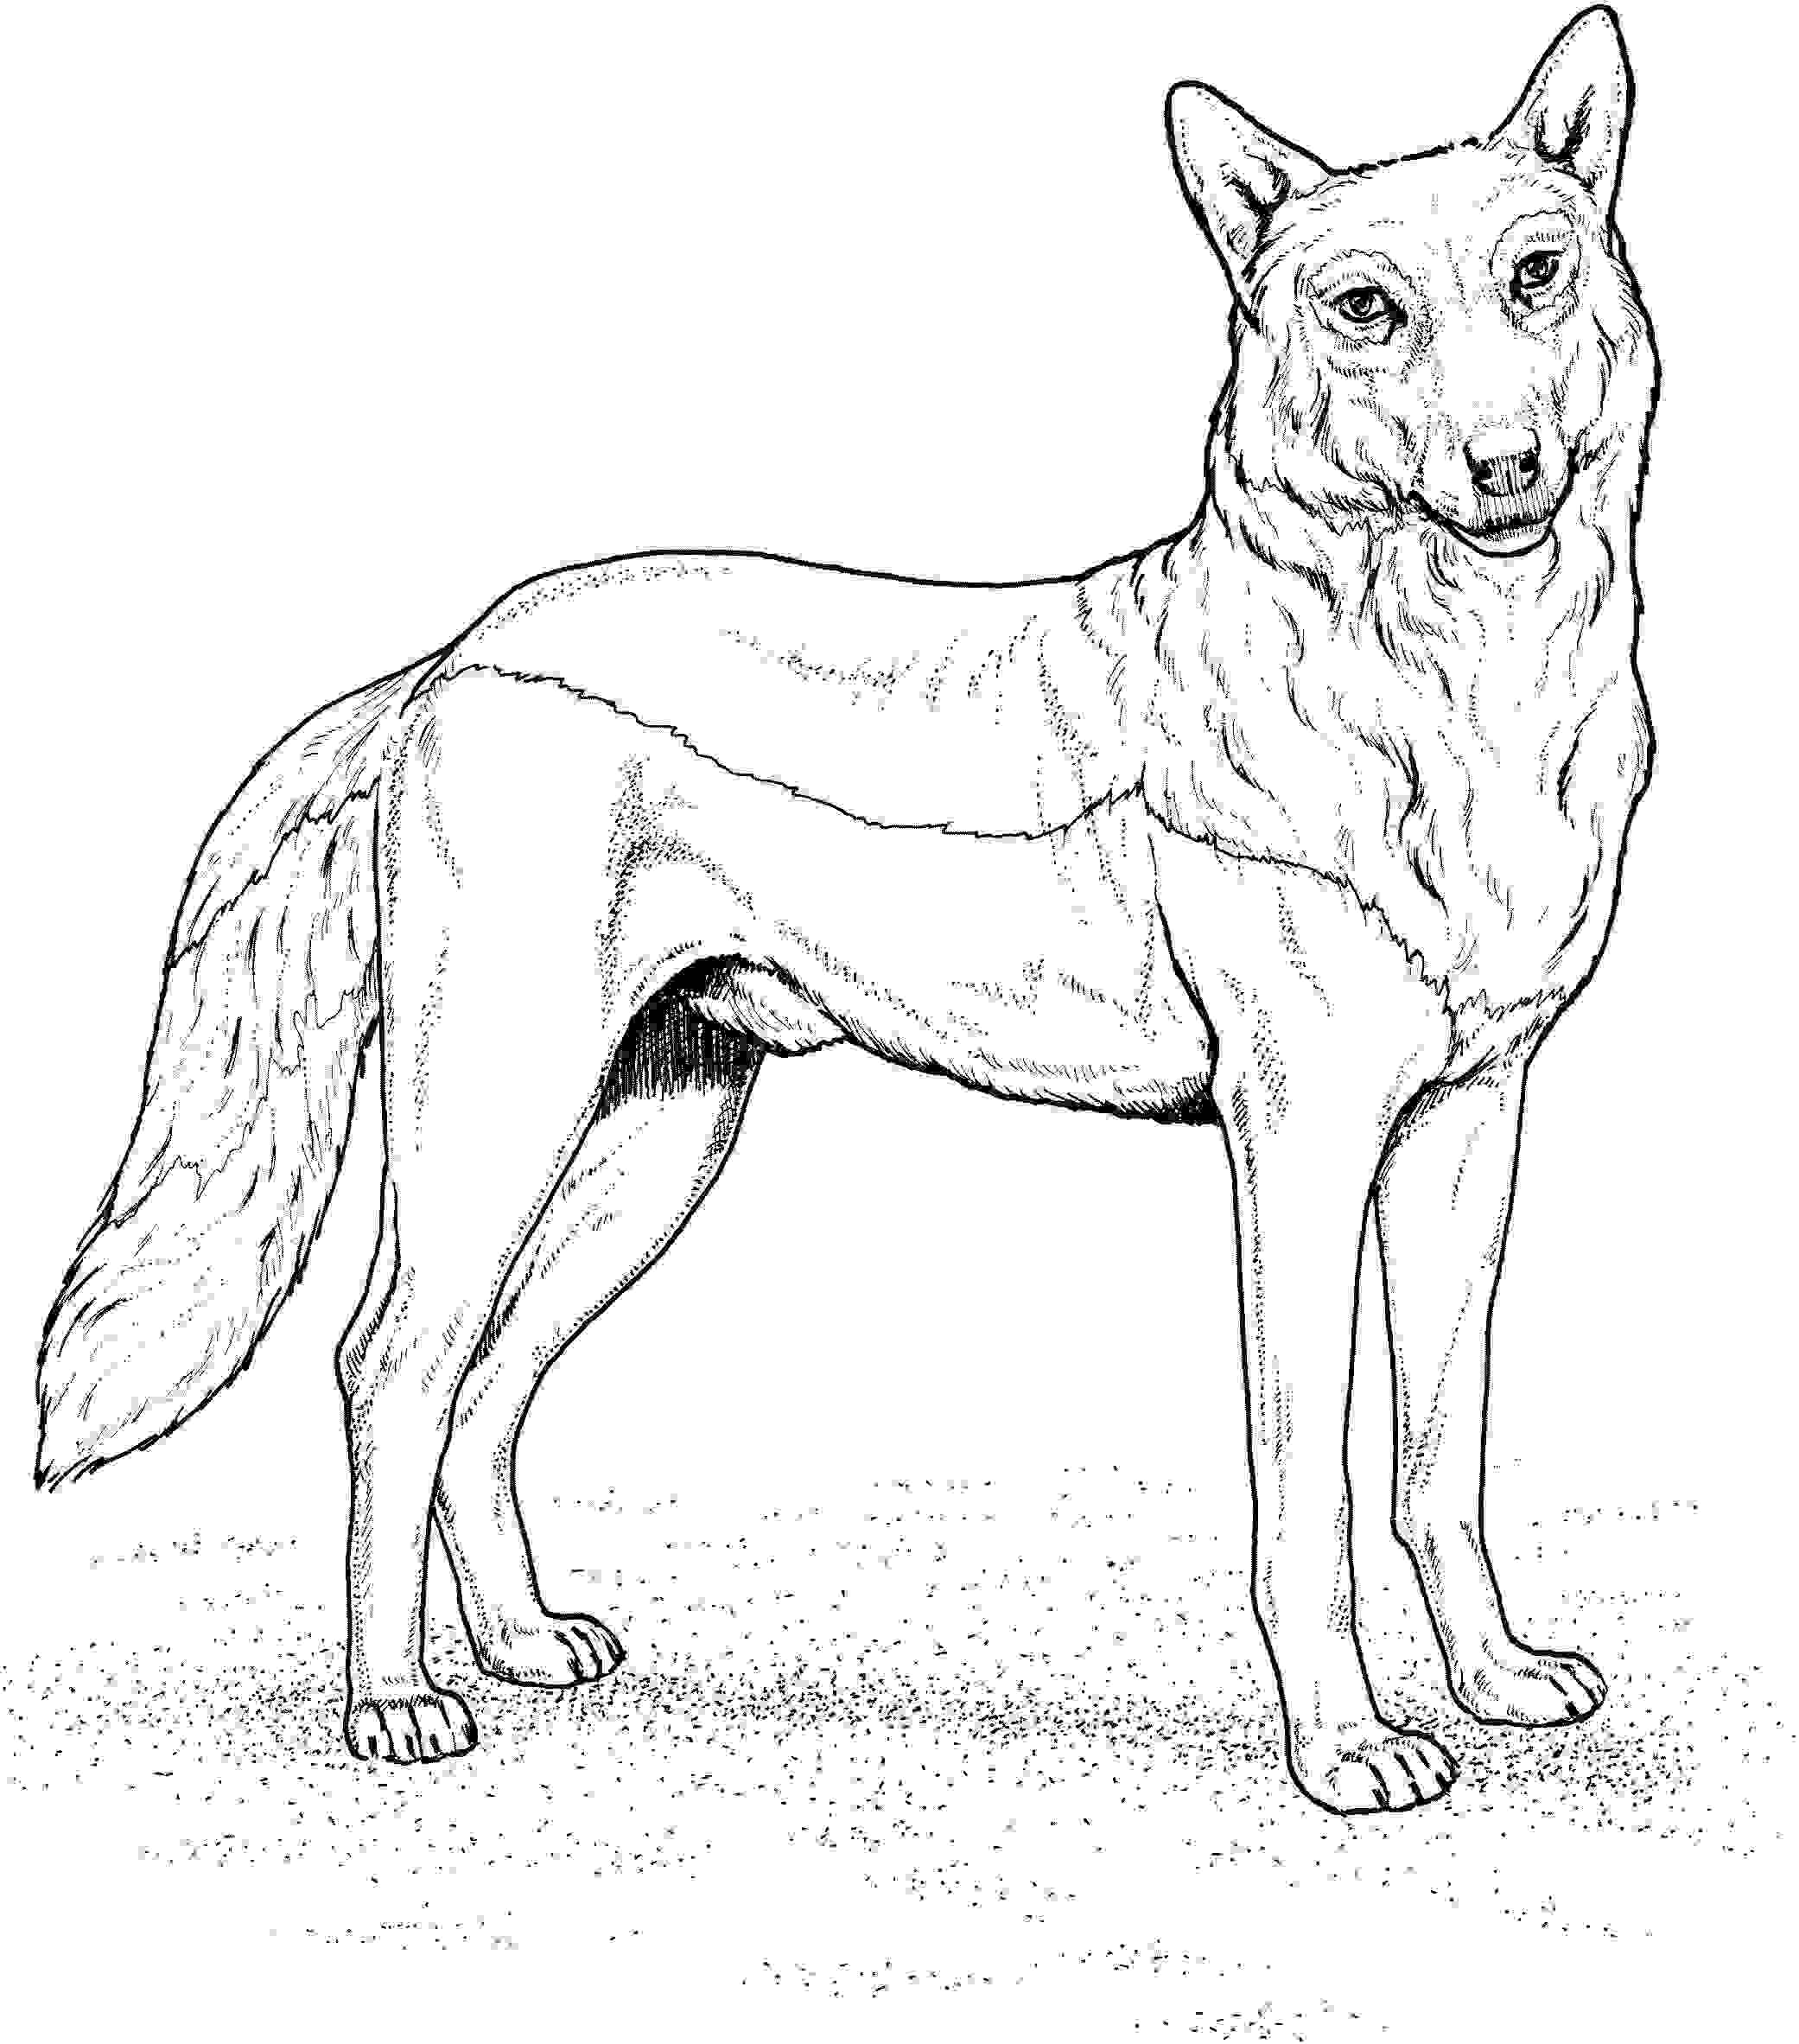 Red Wolf tiene orejas altas, puntiagudas y largas de Wolf.